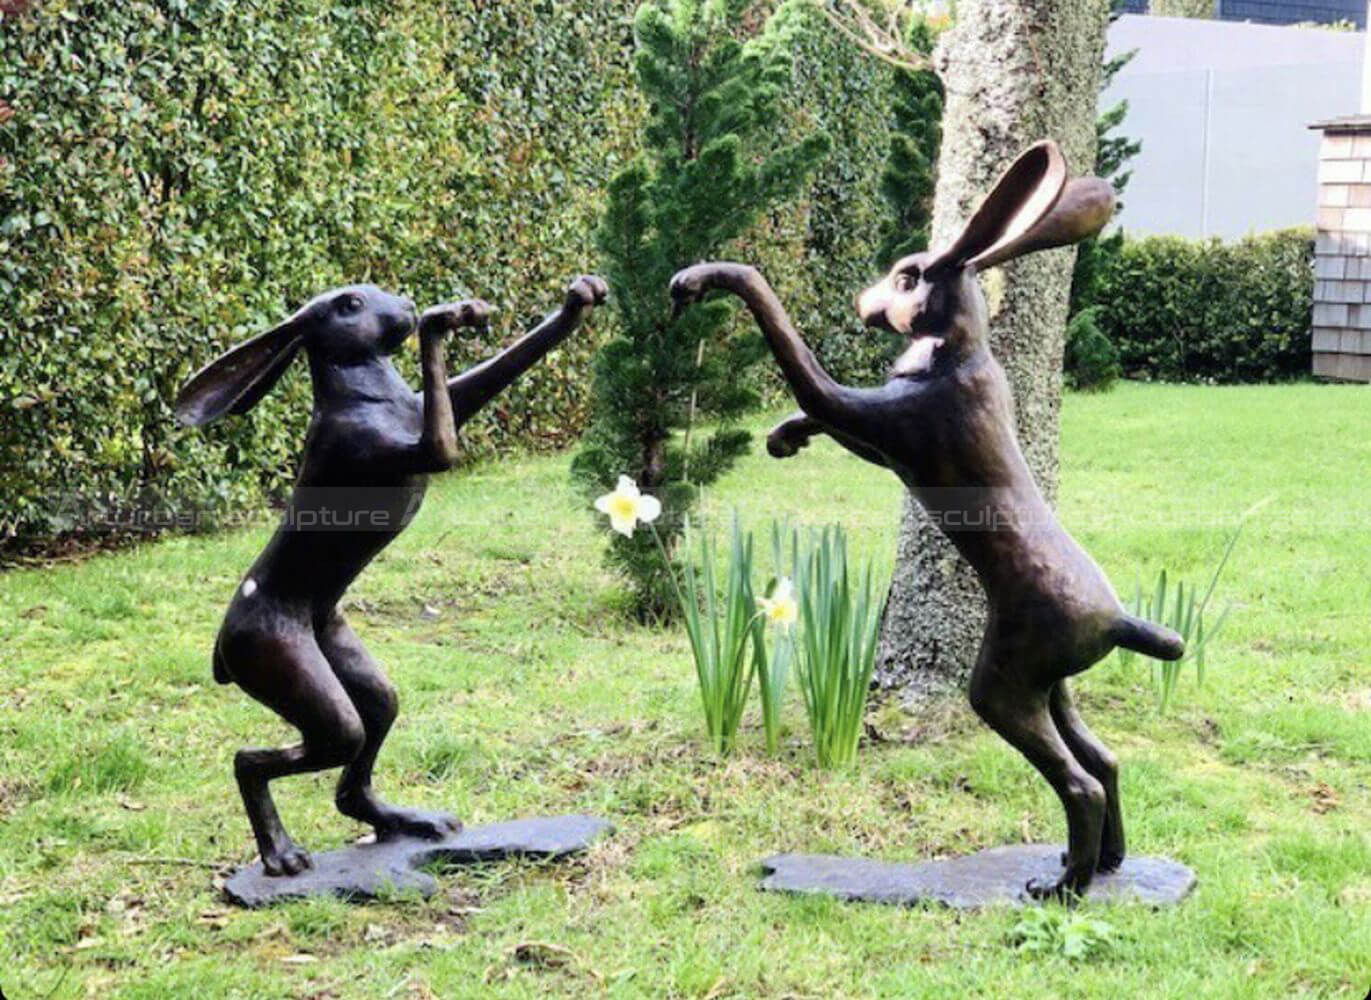 boxing hares garden ornament